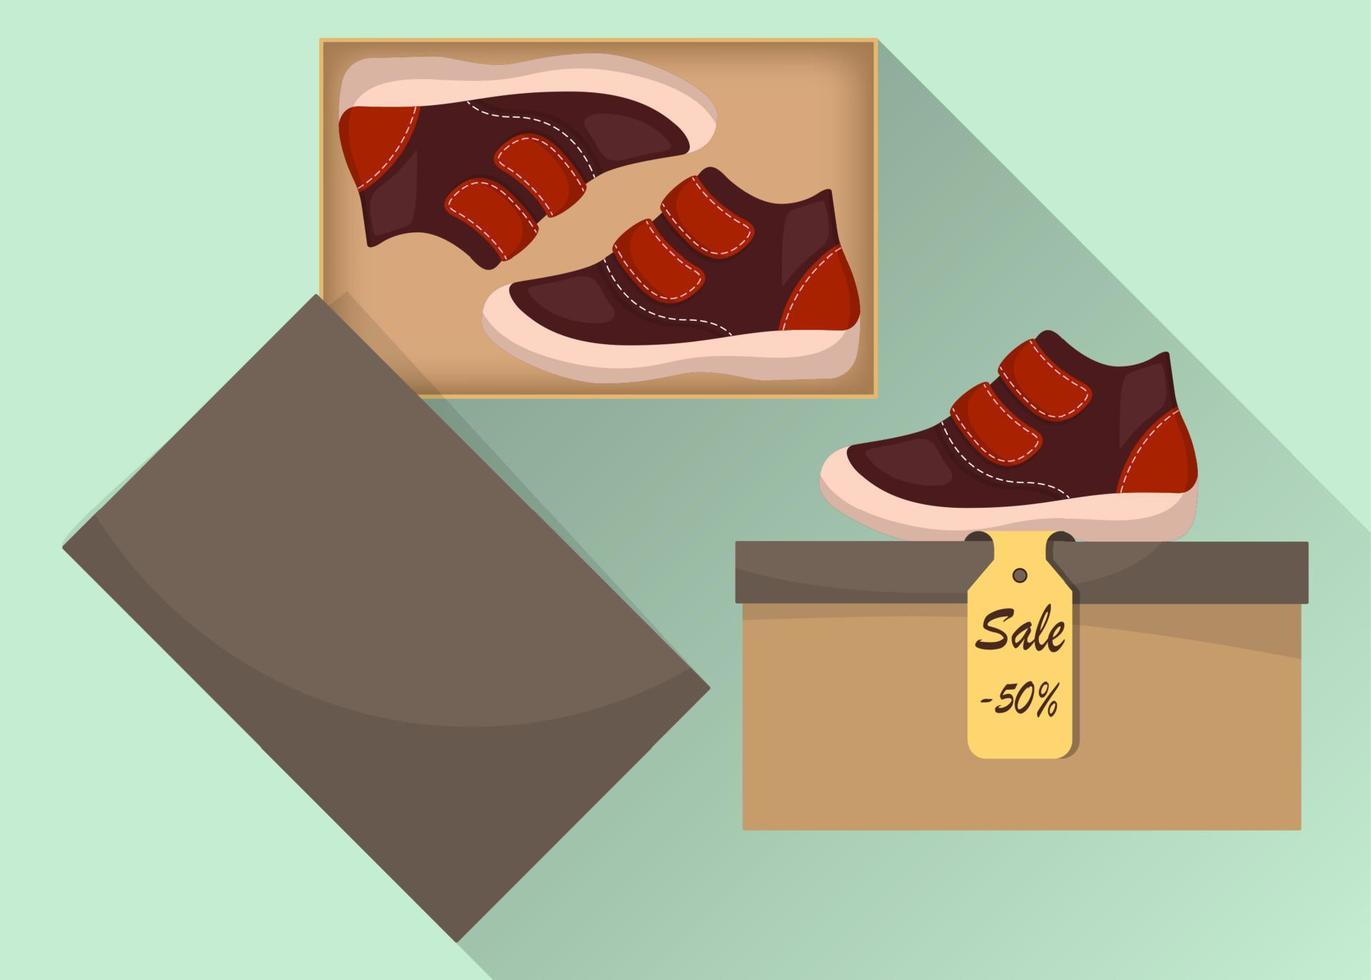 liten söt bebis skor i låda, sida se. försäljning med en rabatt av 50 procent. unge s tillfällig brun stövlar. illustration för en sko Lagra. vektor platt illustration.